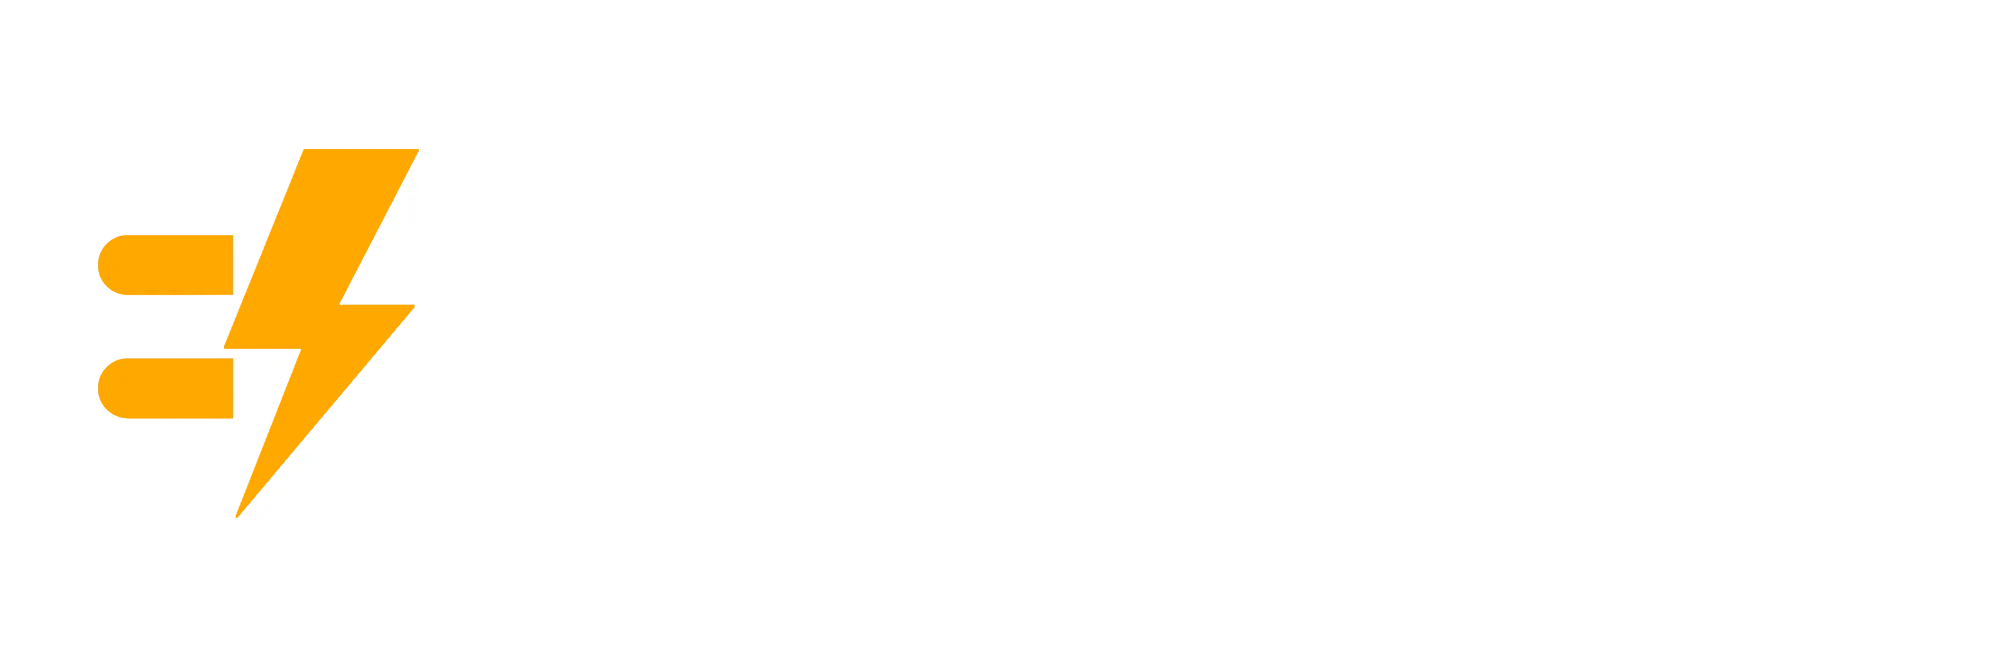 dailyride logo